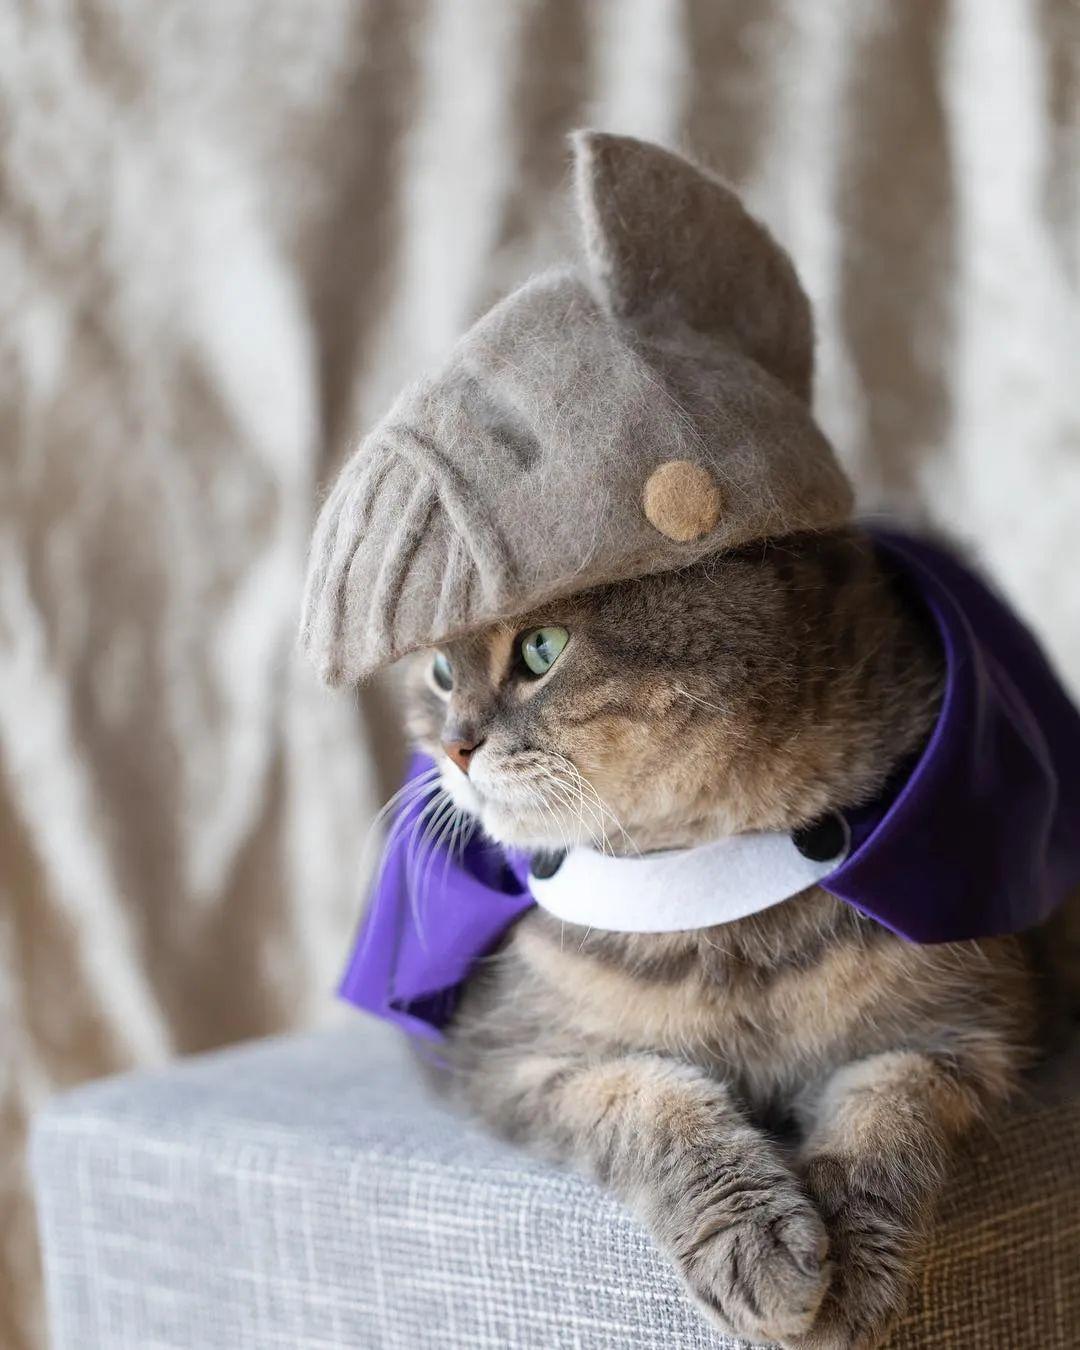 对铲屎官来说不可能的,光是给猫咪戴帽子就有一百种玩法!